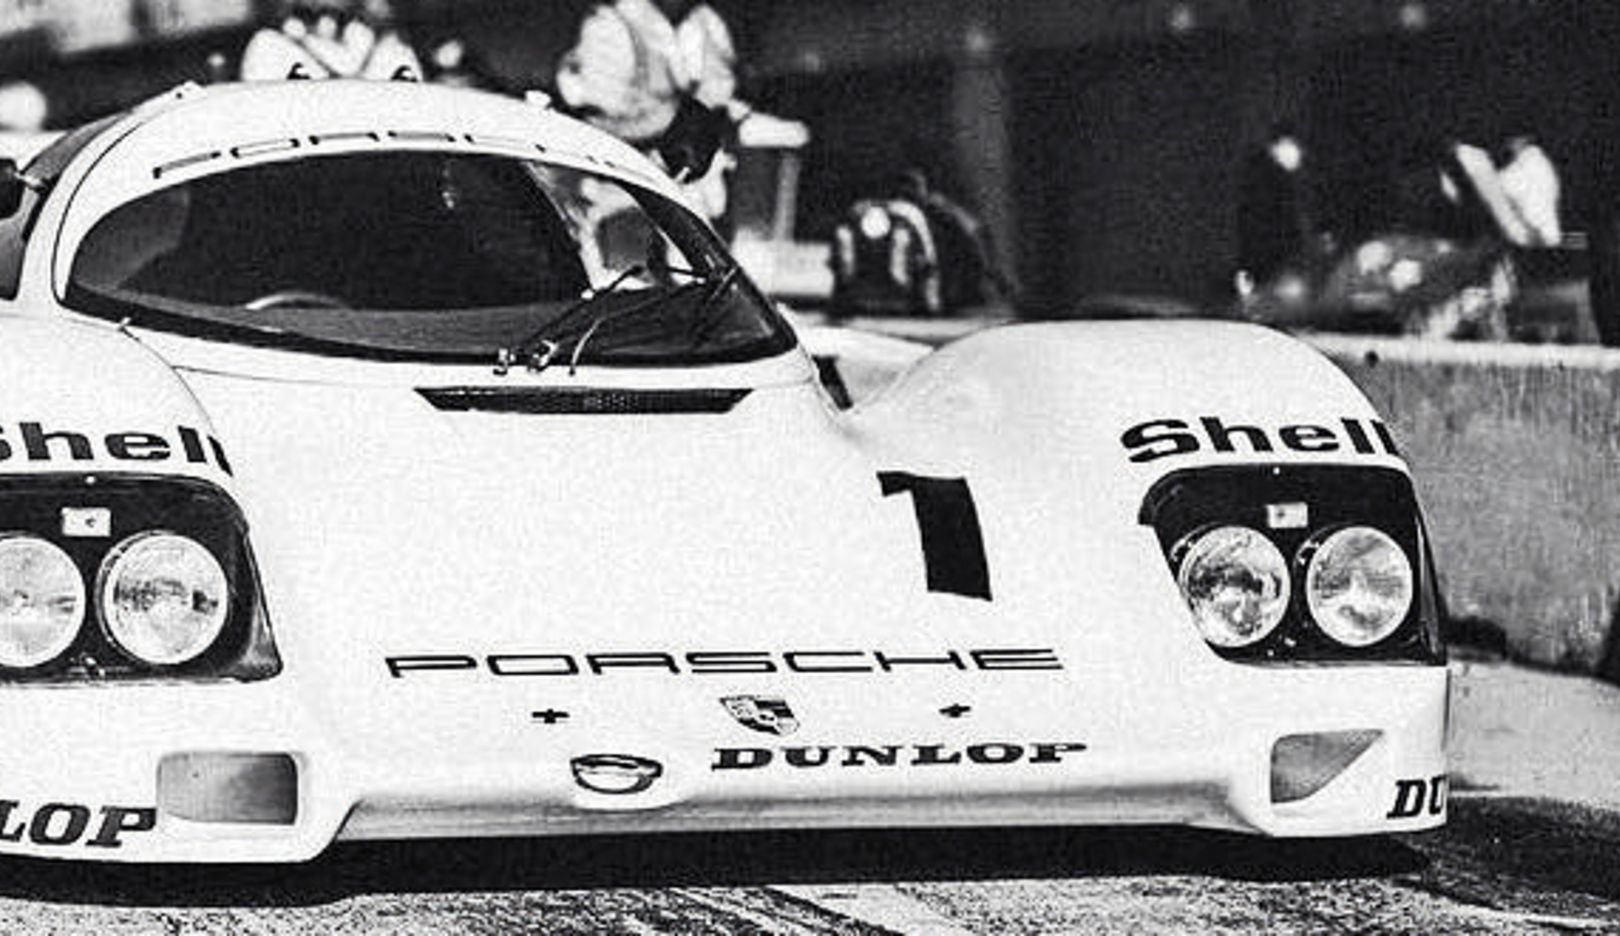 Reduzido: em preto e branco, o design purista deste Porsche 962 revela-se perfeitamente